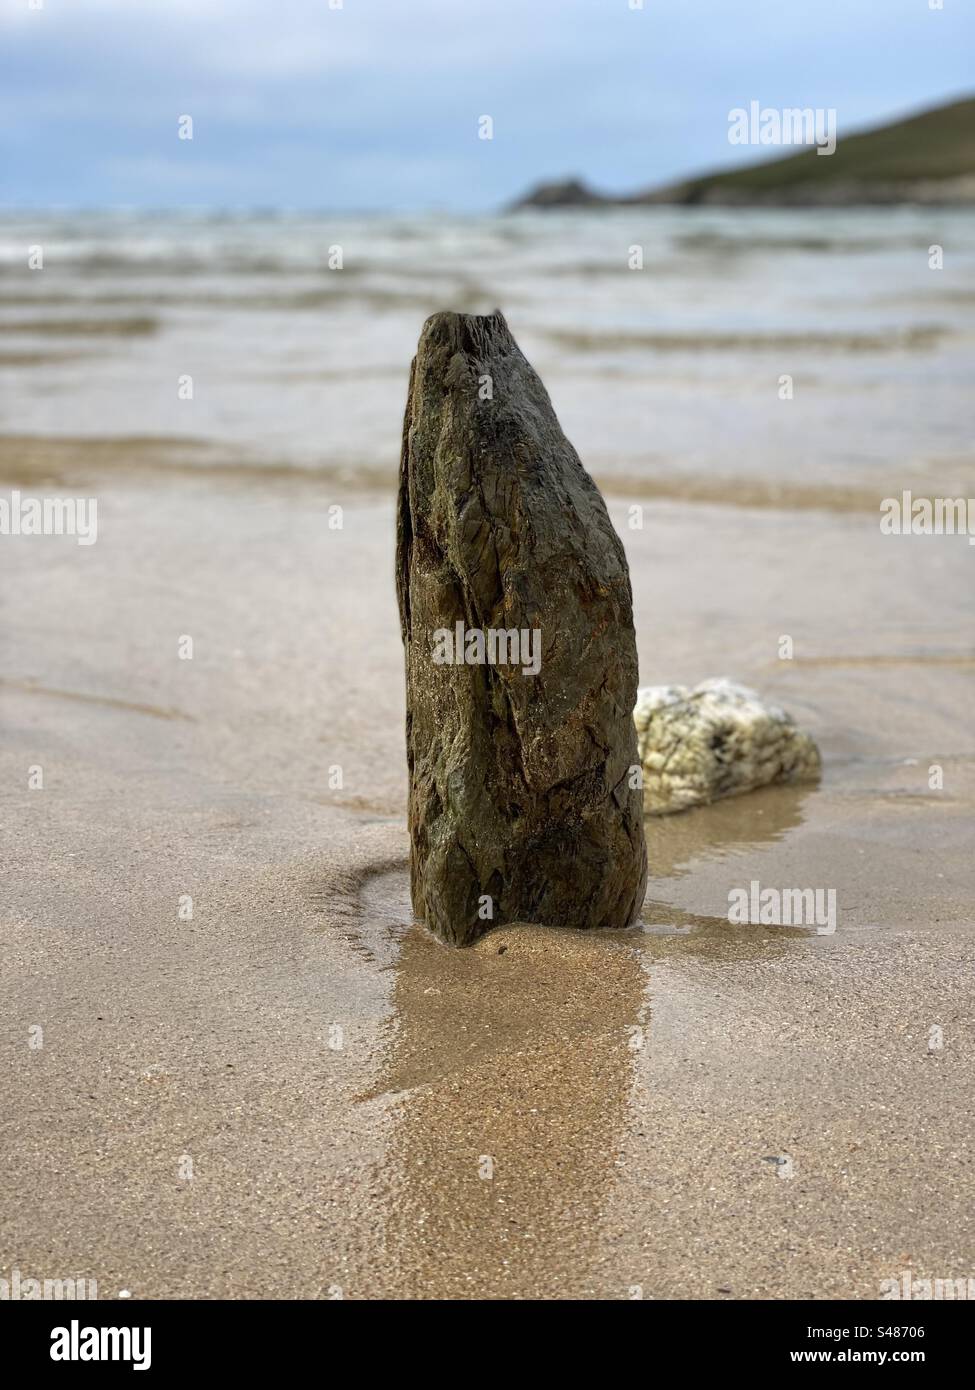 La roccia si trovava in posizione eretta nella sabbia Foto Stock